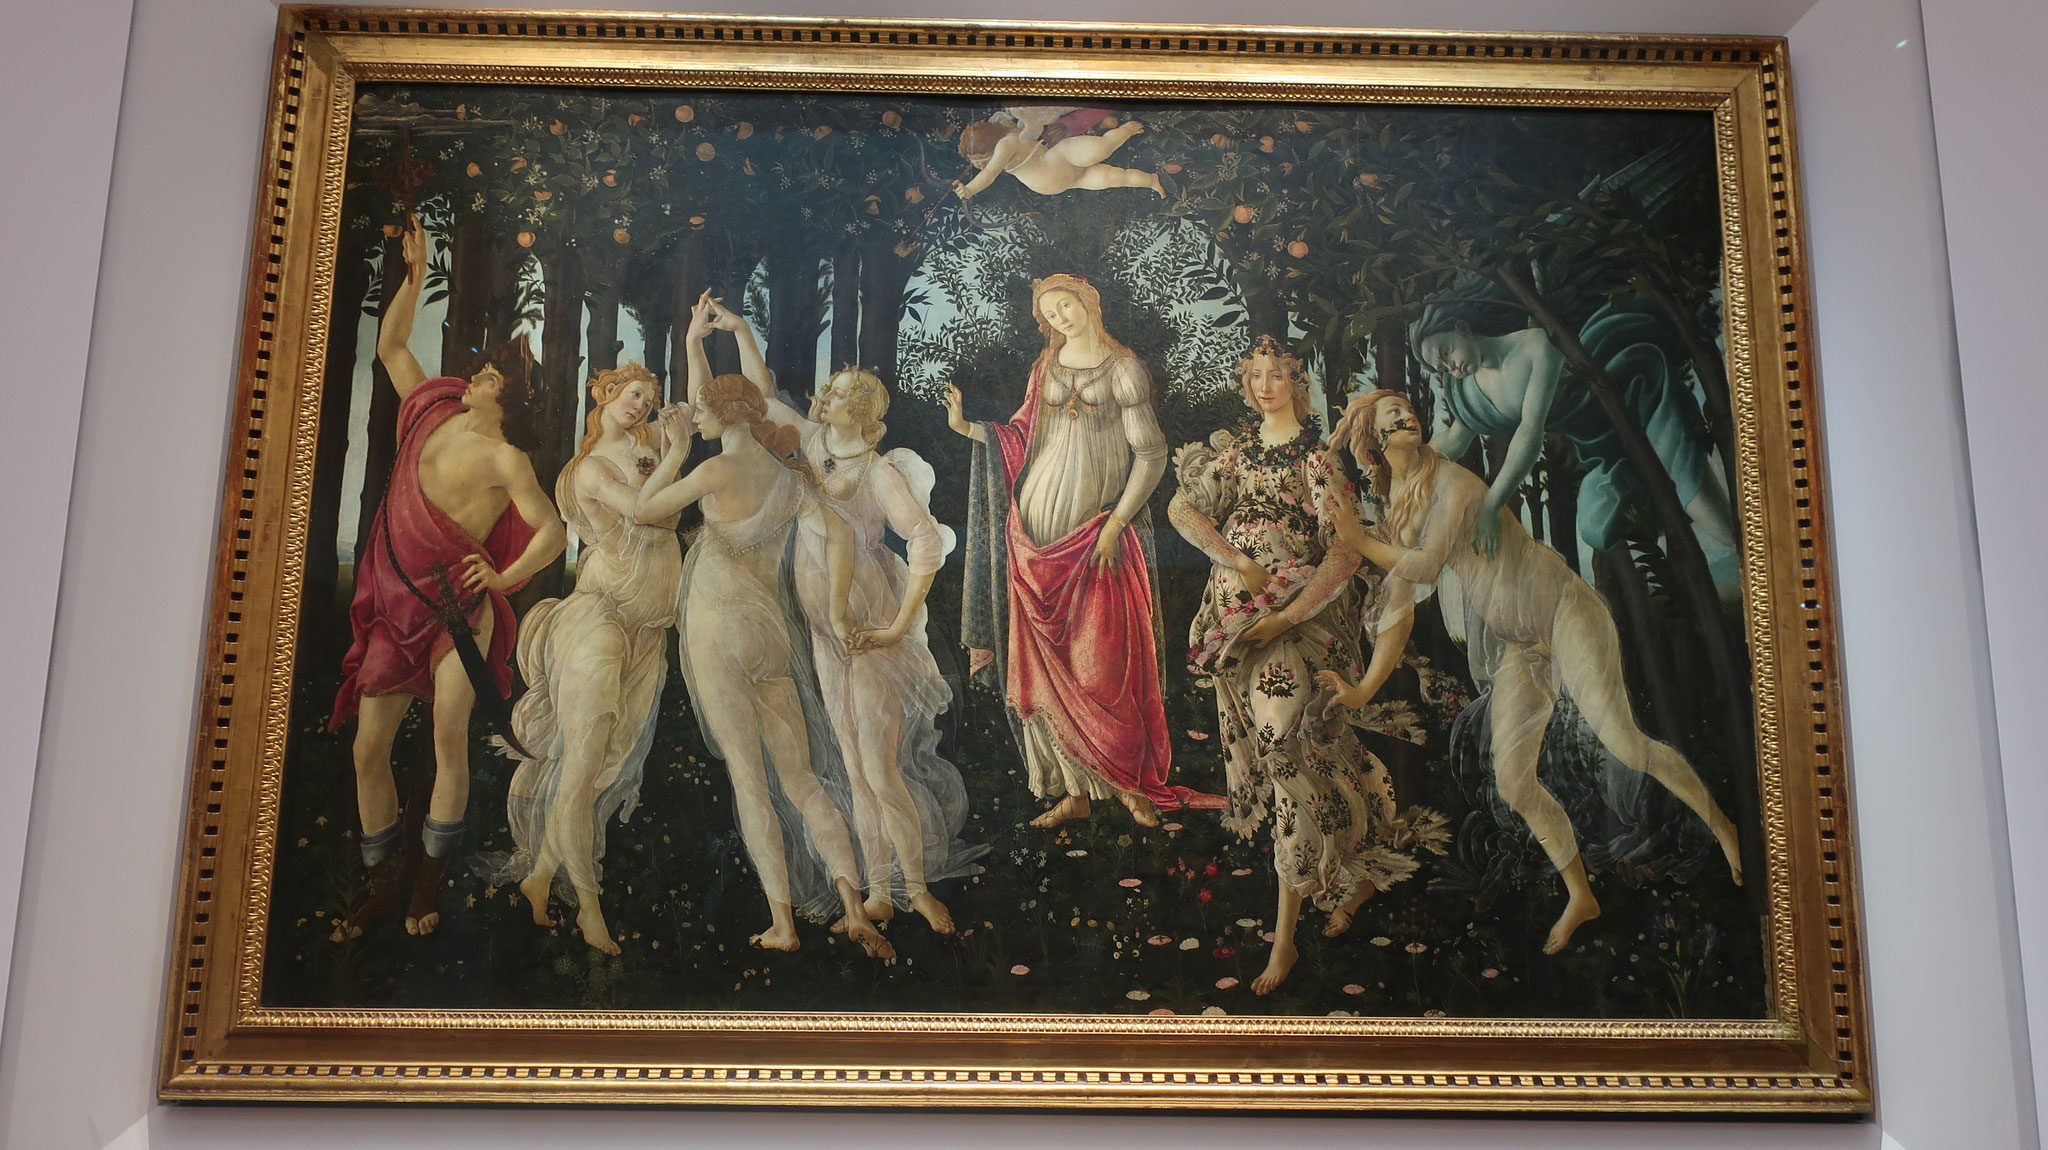 "Primavera" by Botticelli